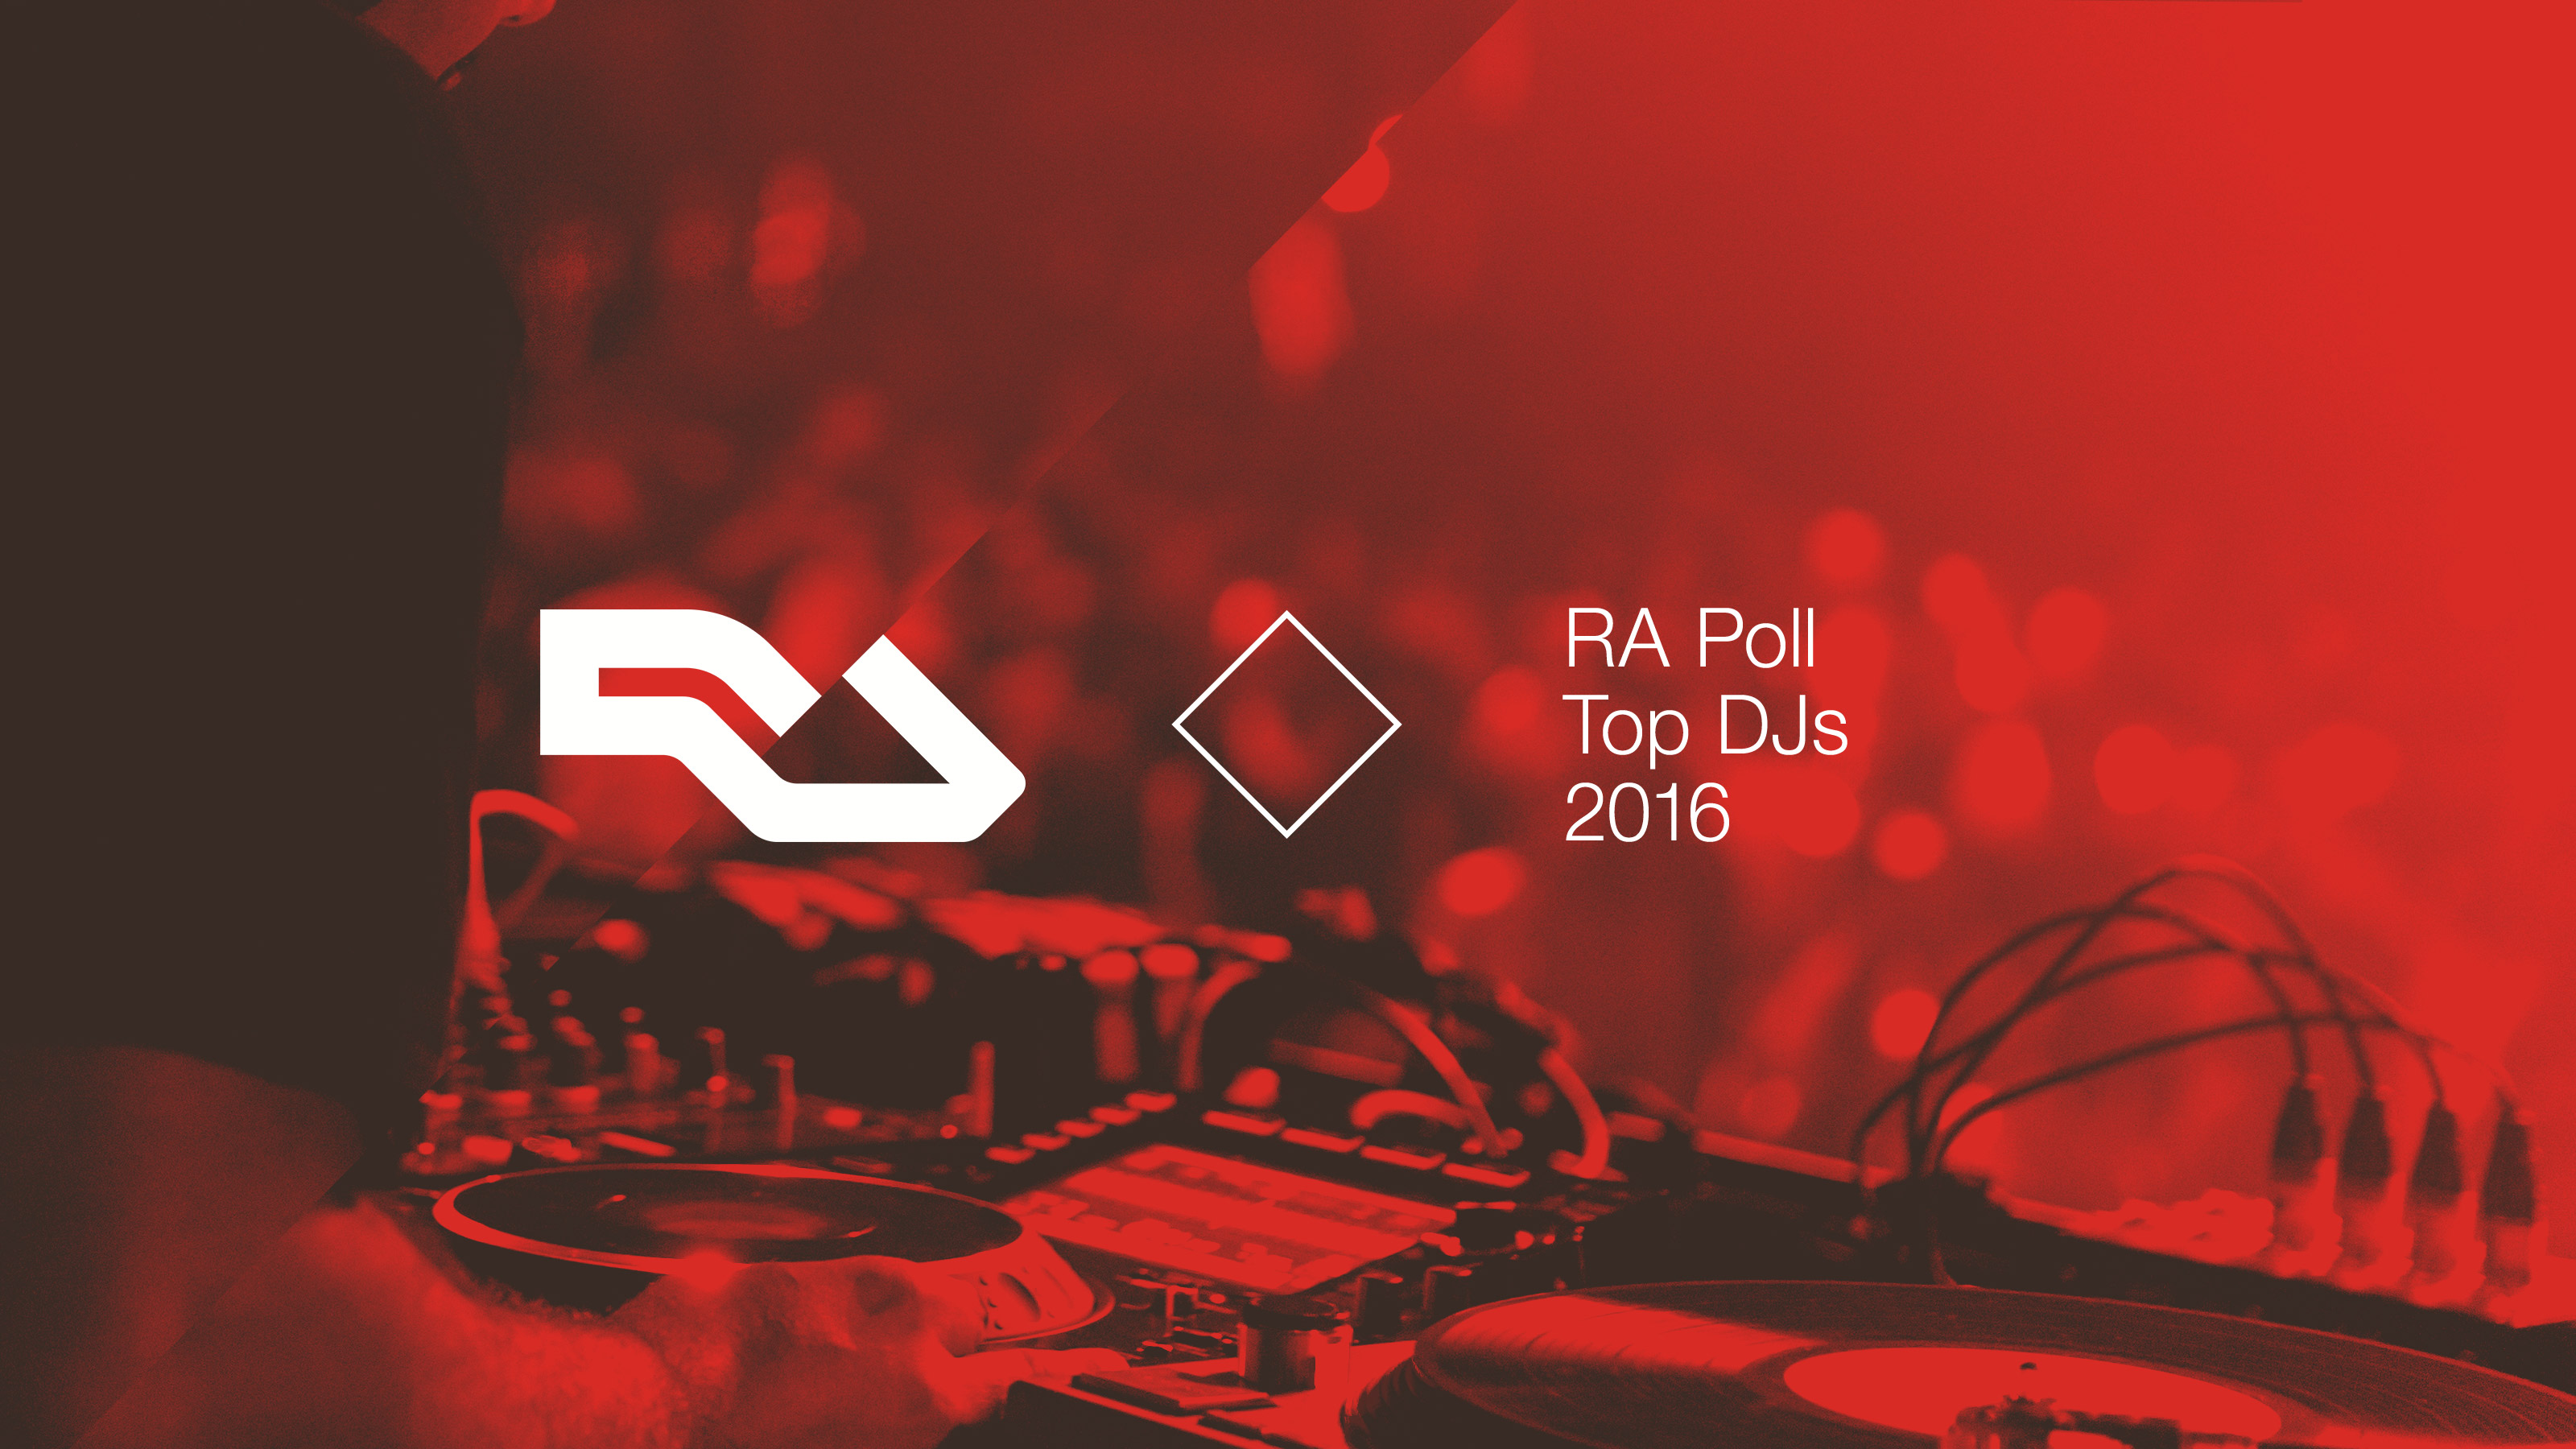 RA Poll: Top DJs of 2016